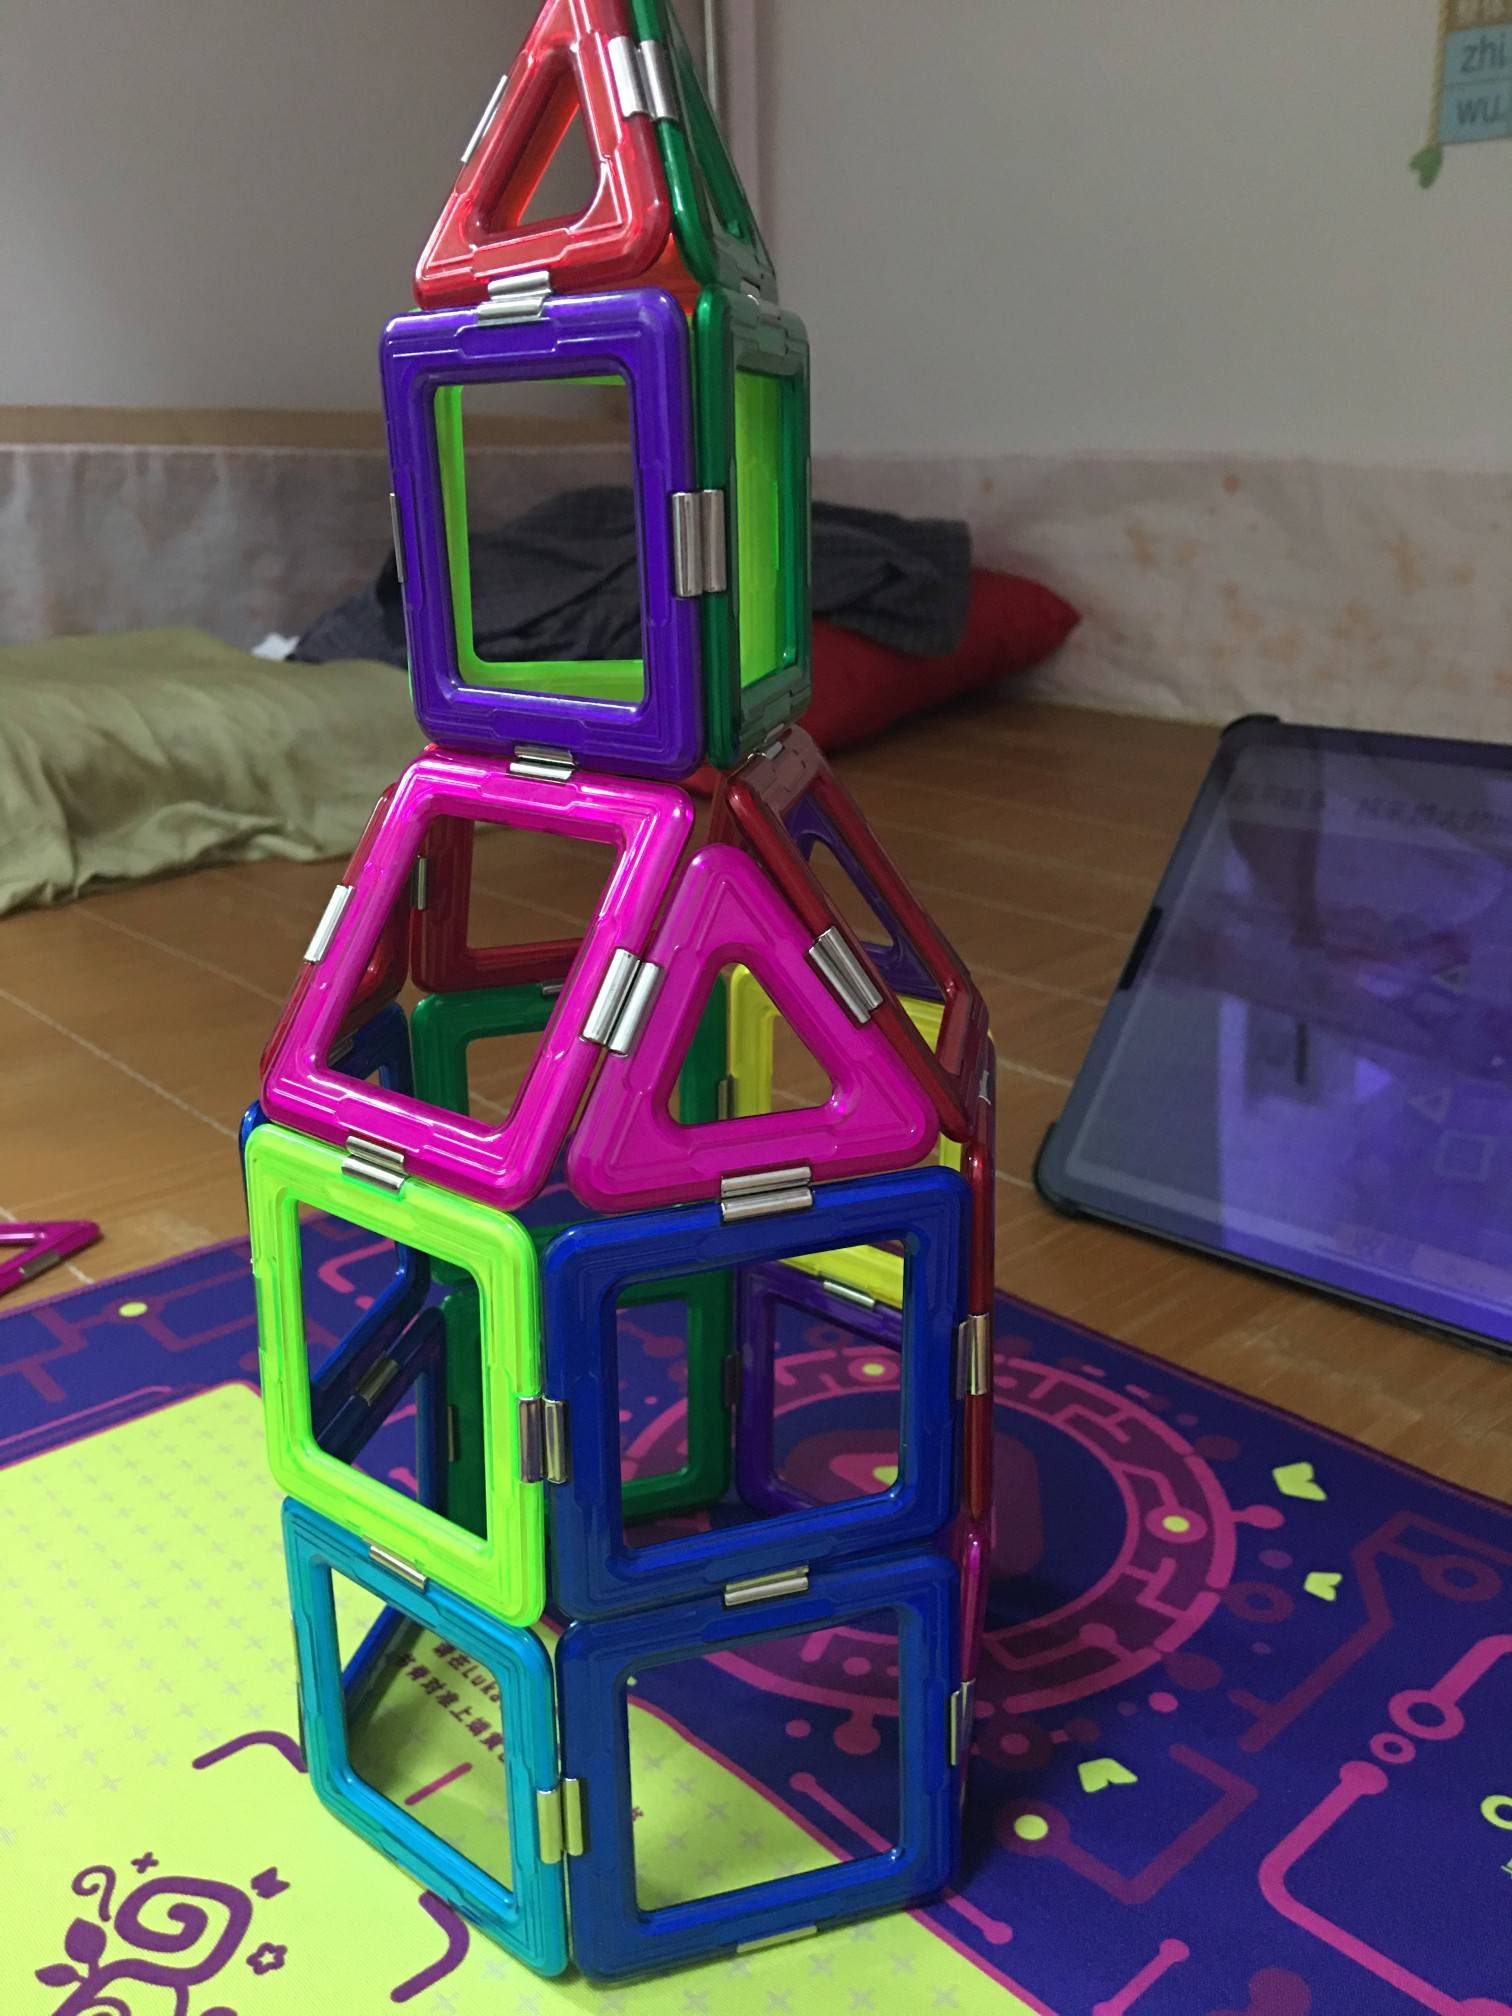 城堡造型是用磁力片拼搭的孩子积木玩具,选自机变酷卡城堡搭建教程下